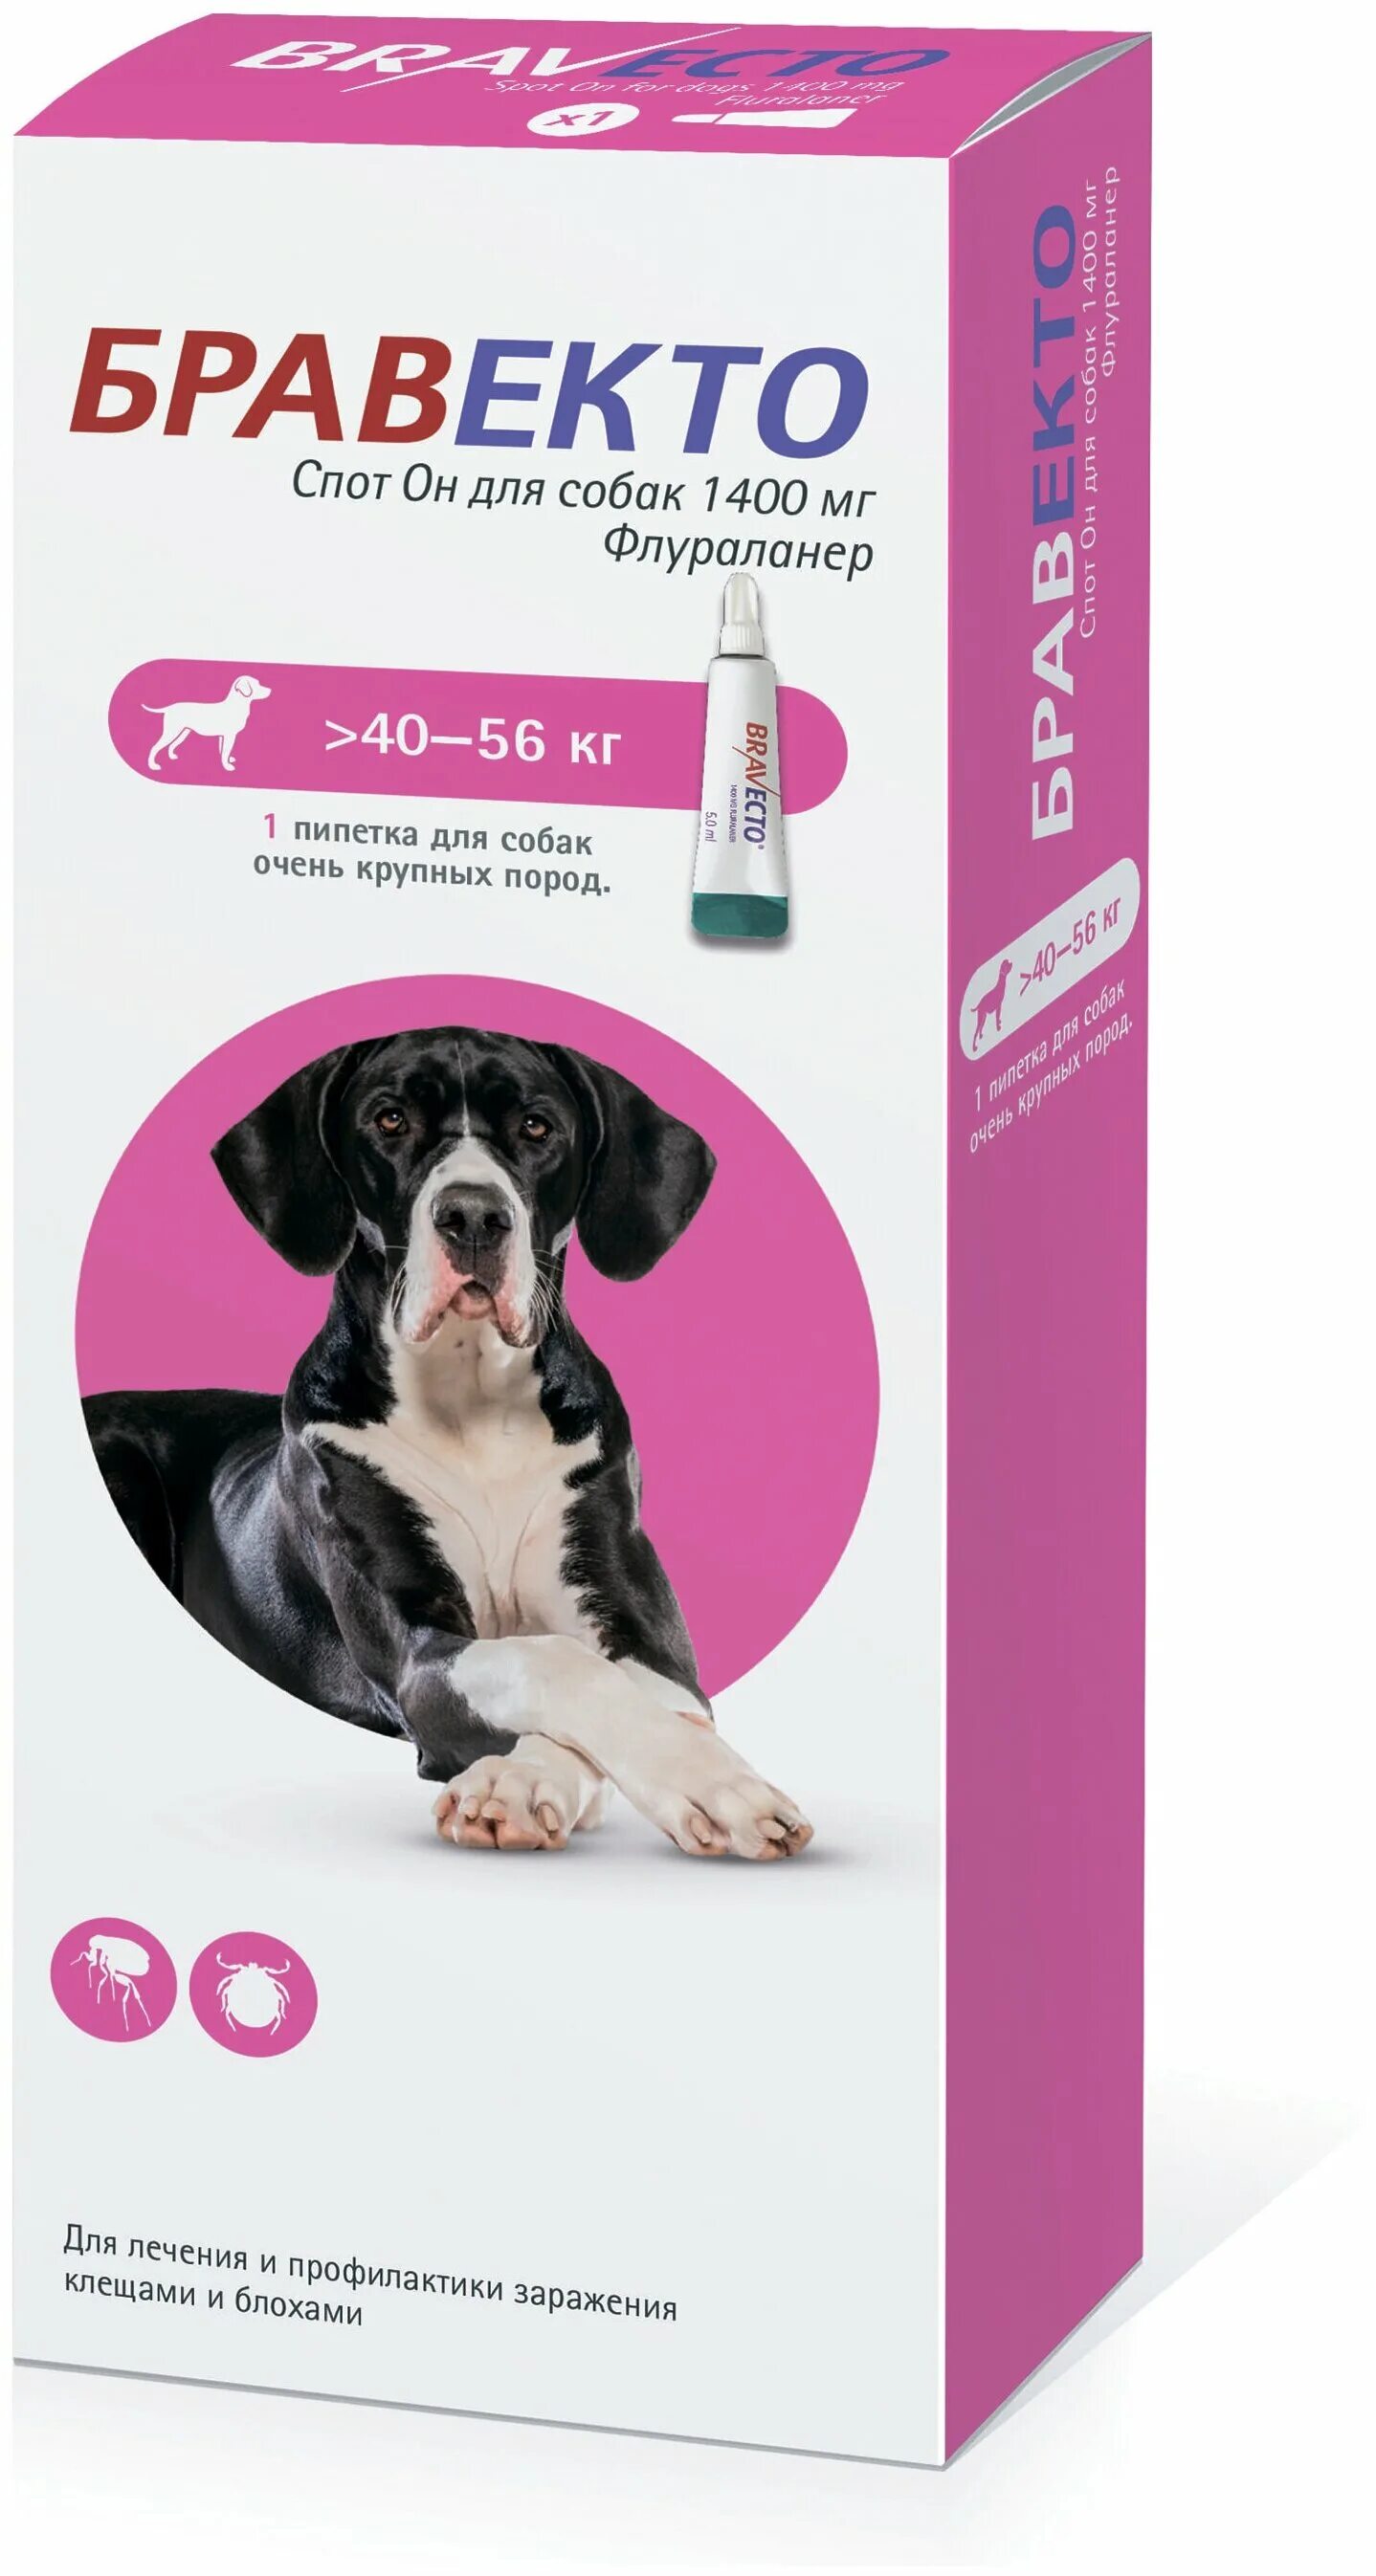 Бравекто спот он для собак (1400 мг) 40-56 кг. Бравекто (MSD animal Health) капли от блох и клещей спот он для собак 4,5-10 кг. Бравекто для собак 10-20 капли. Бравекто для собак 1400 мг 40-56.